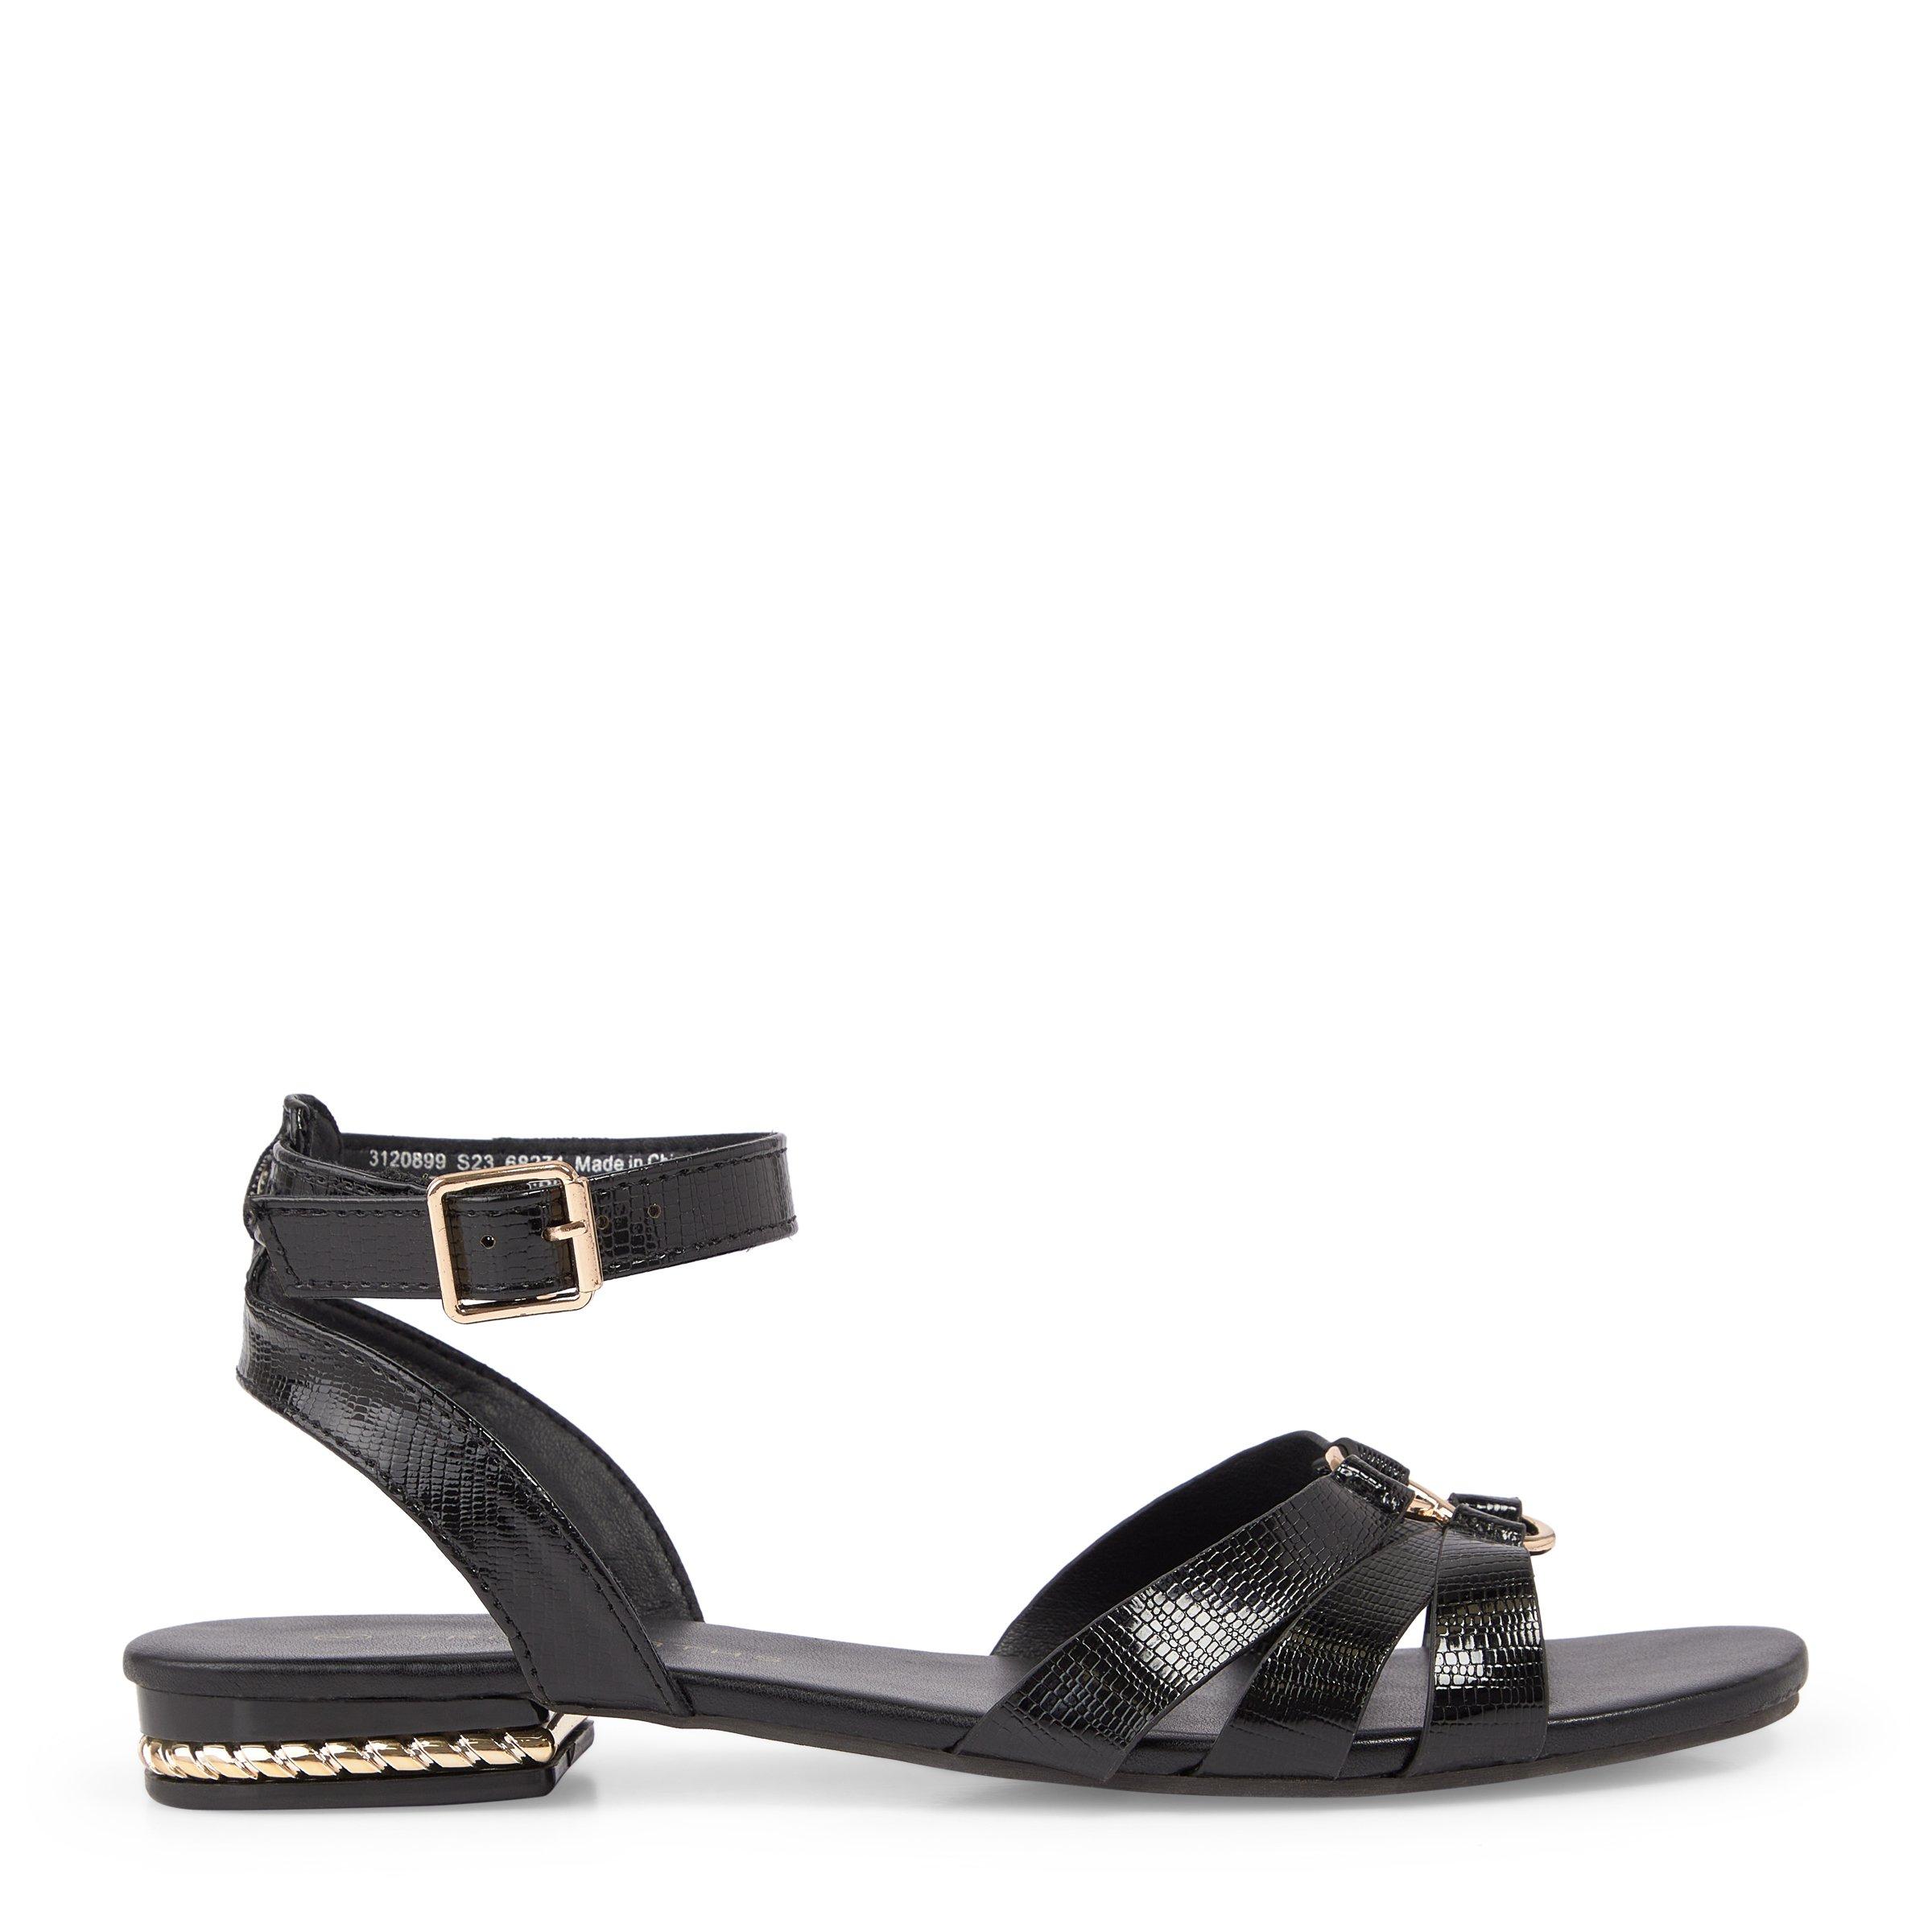 Black Ankle Strap Sandals (3120899) | Truworths